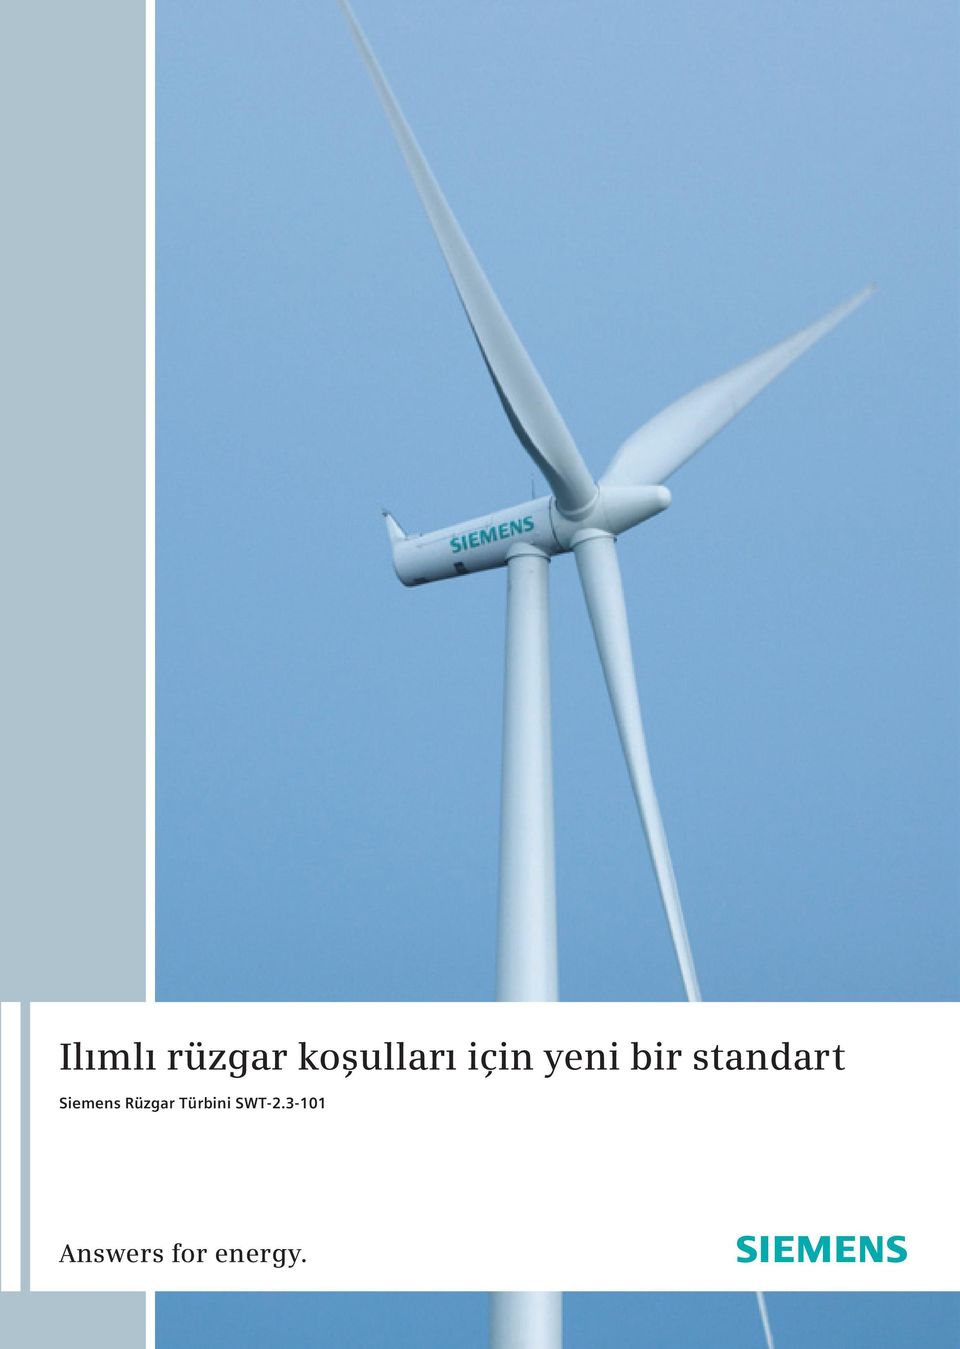 Siemens Rüzgar bini